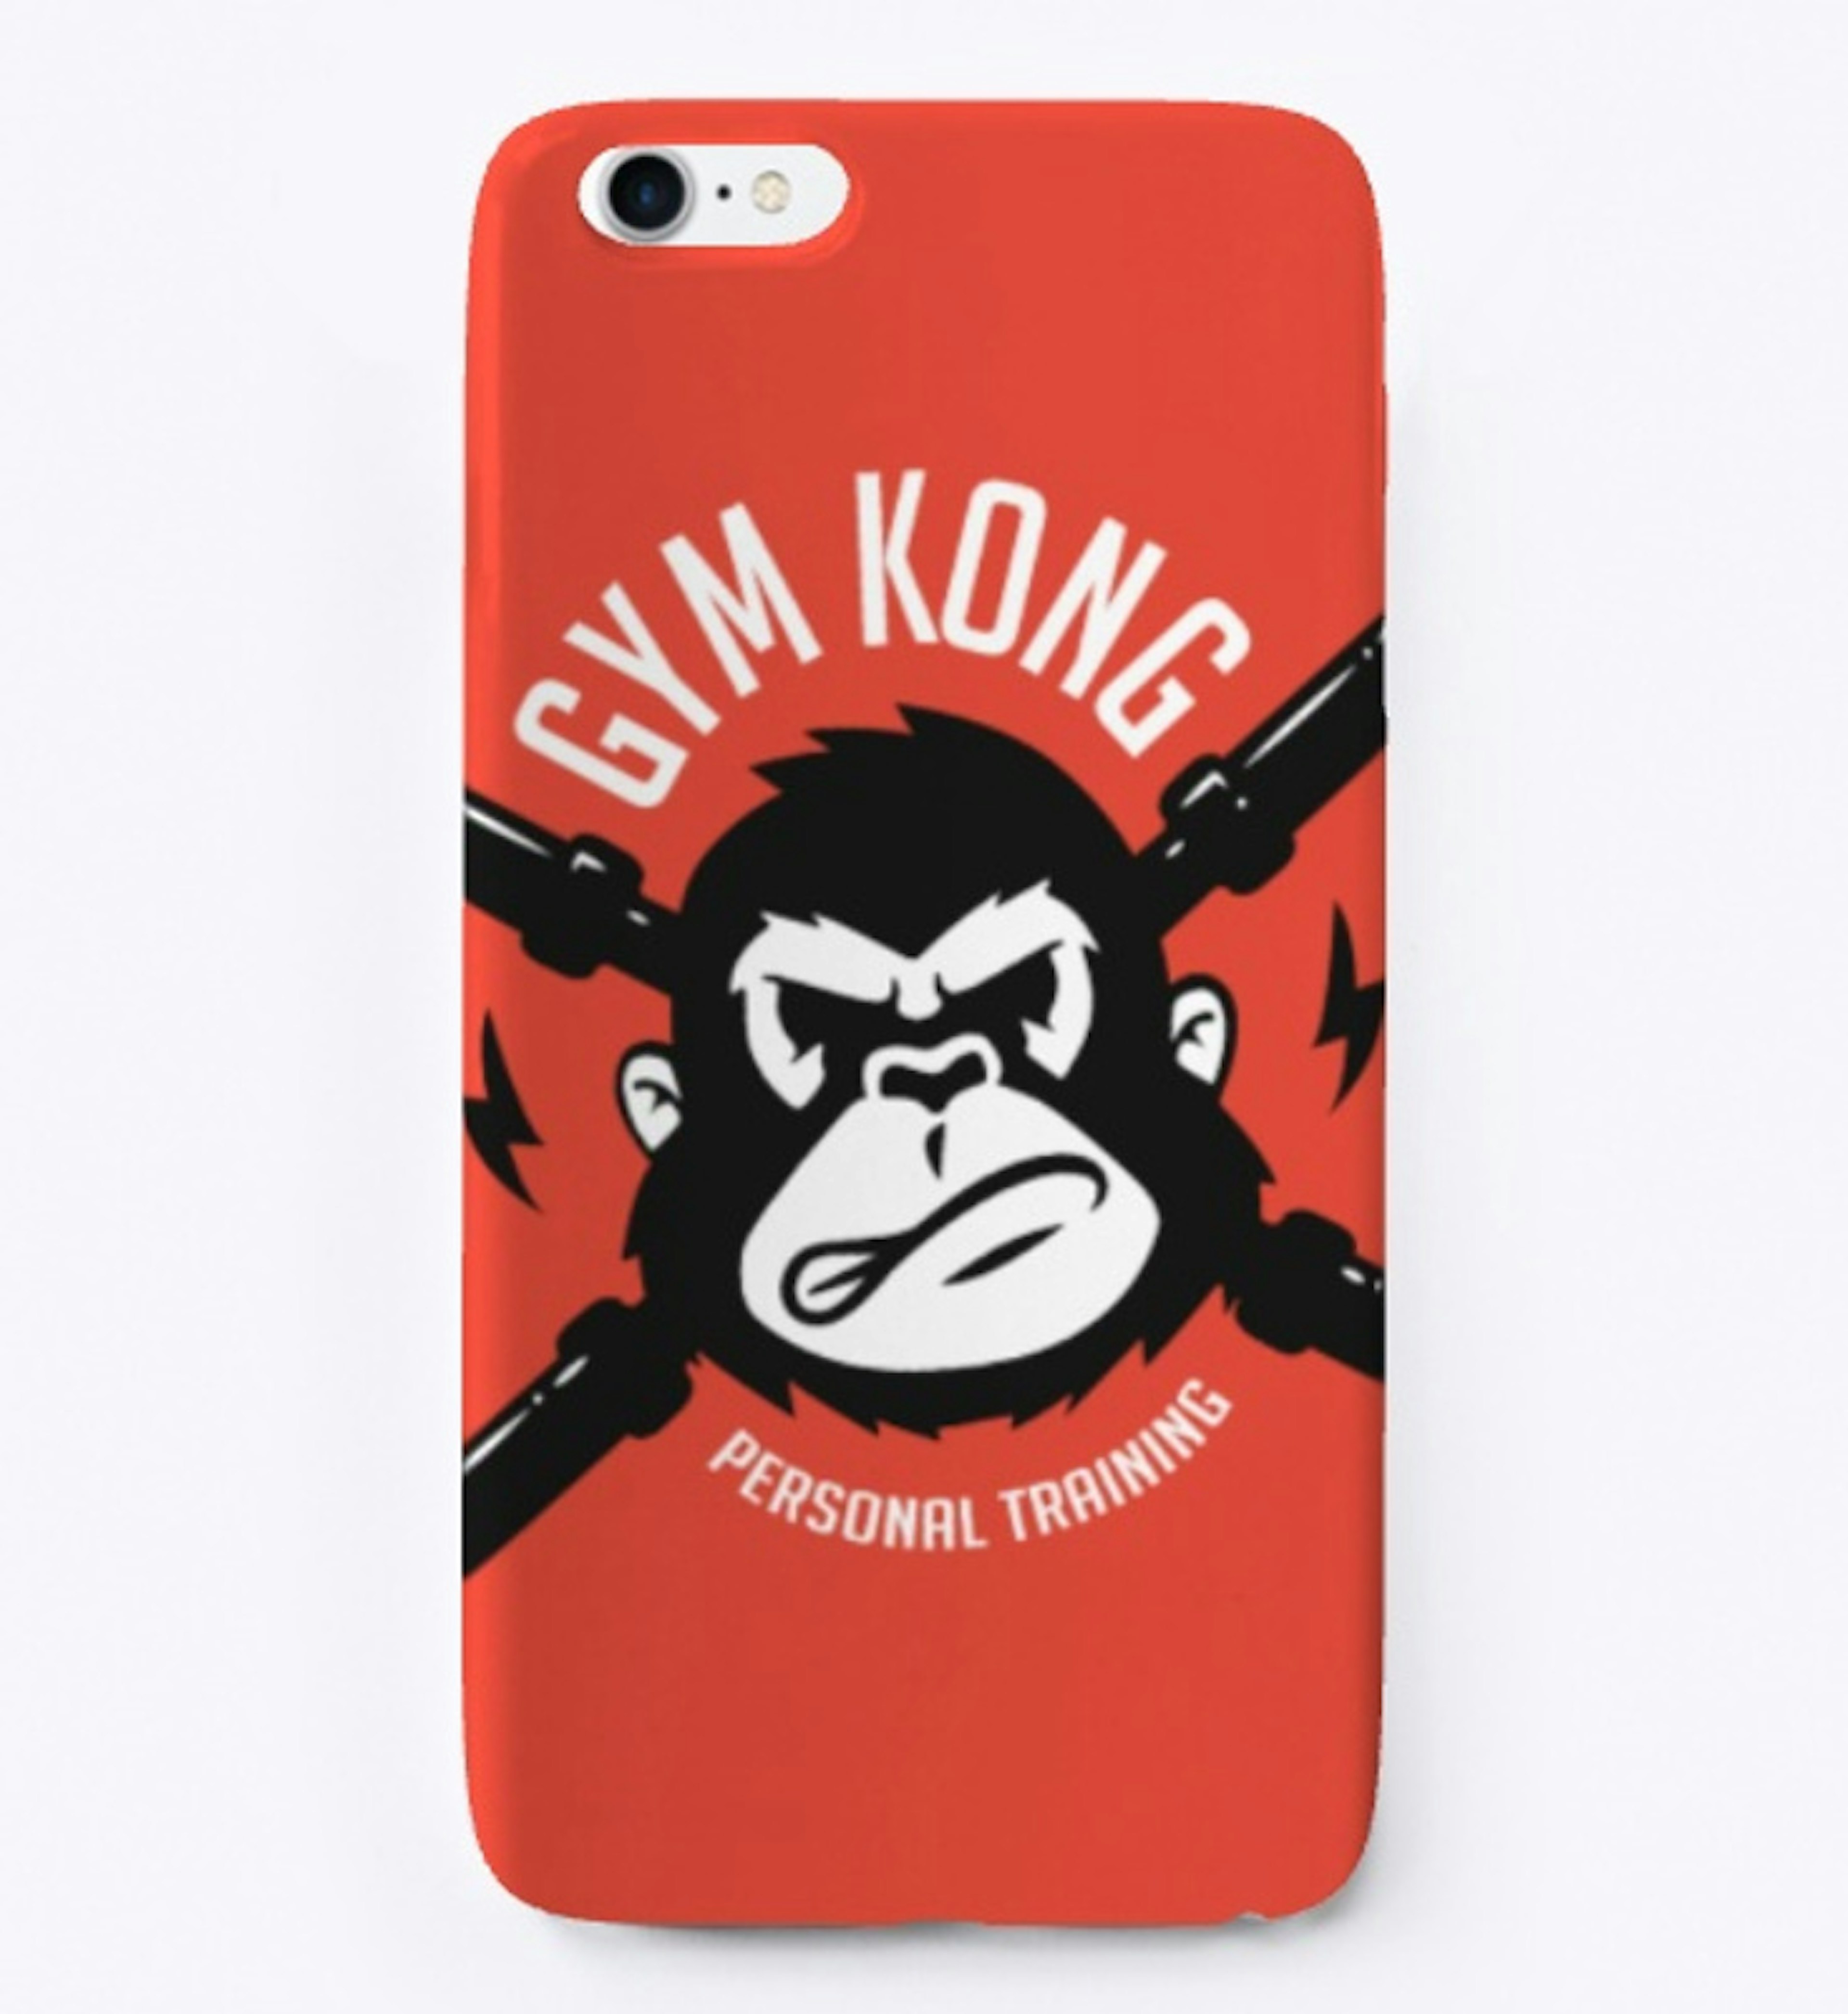 Gym Kong Phone Case w Logo